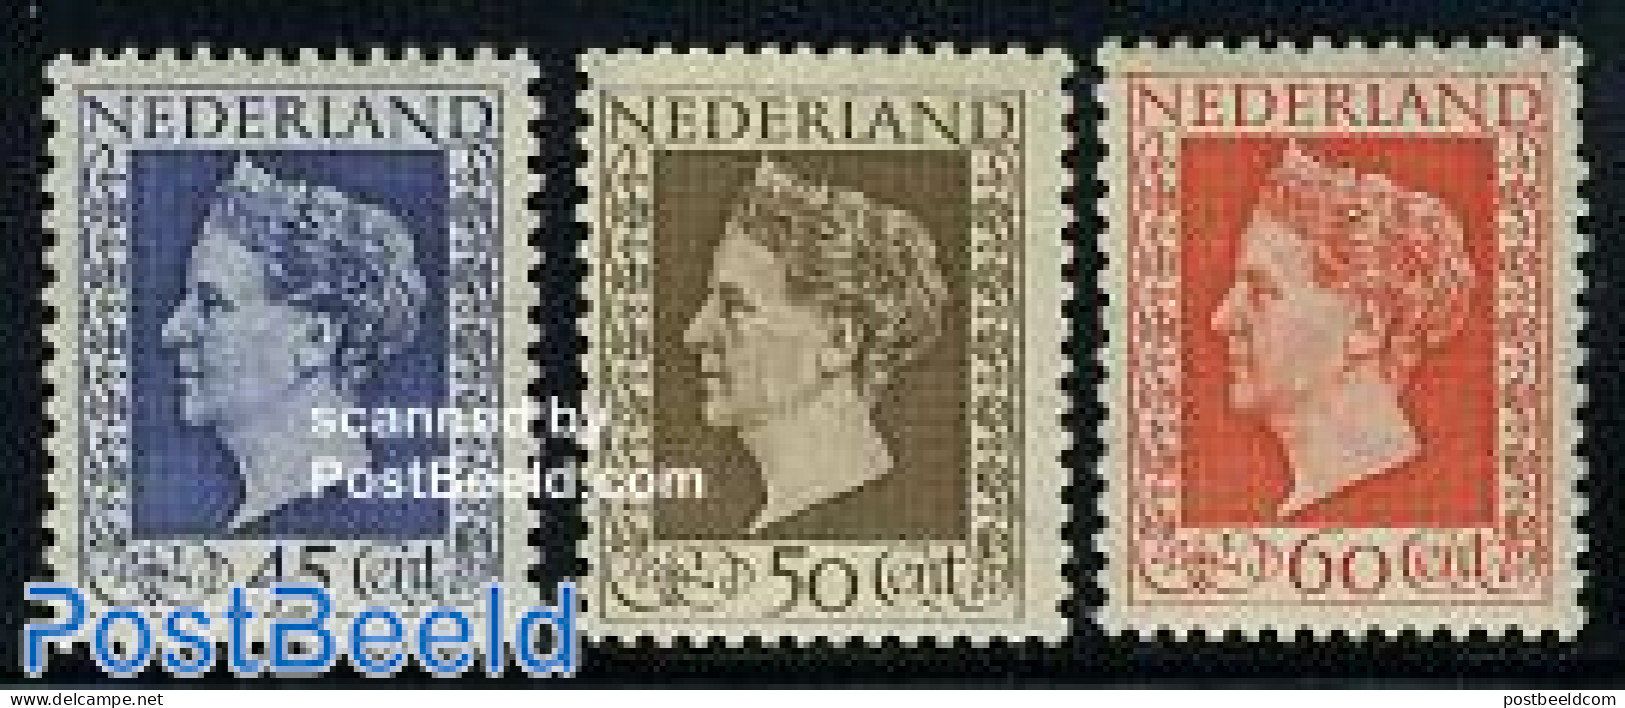 Netherlands 1948 Definitives 3v, Mint NH - Nuevos